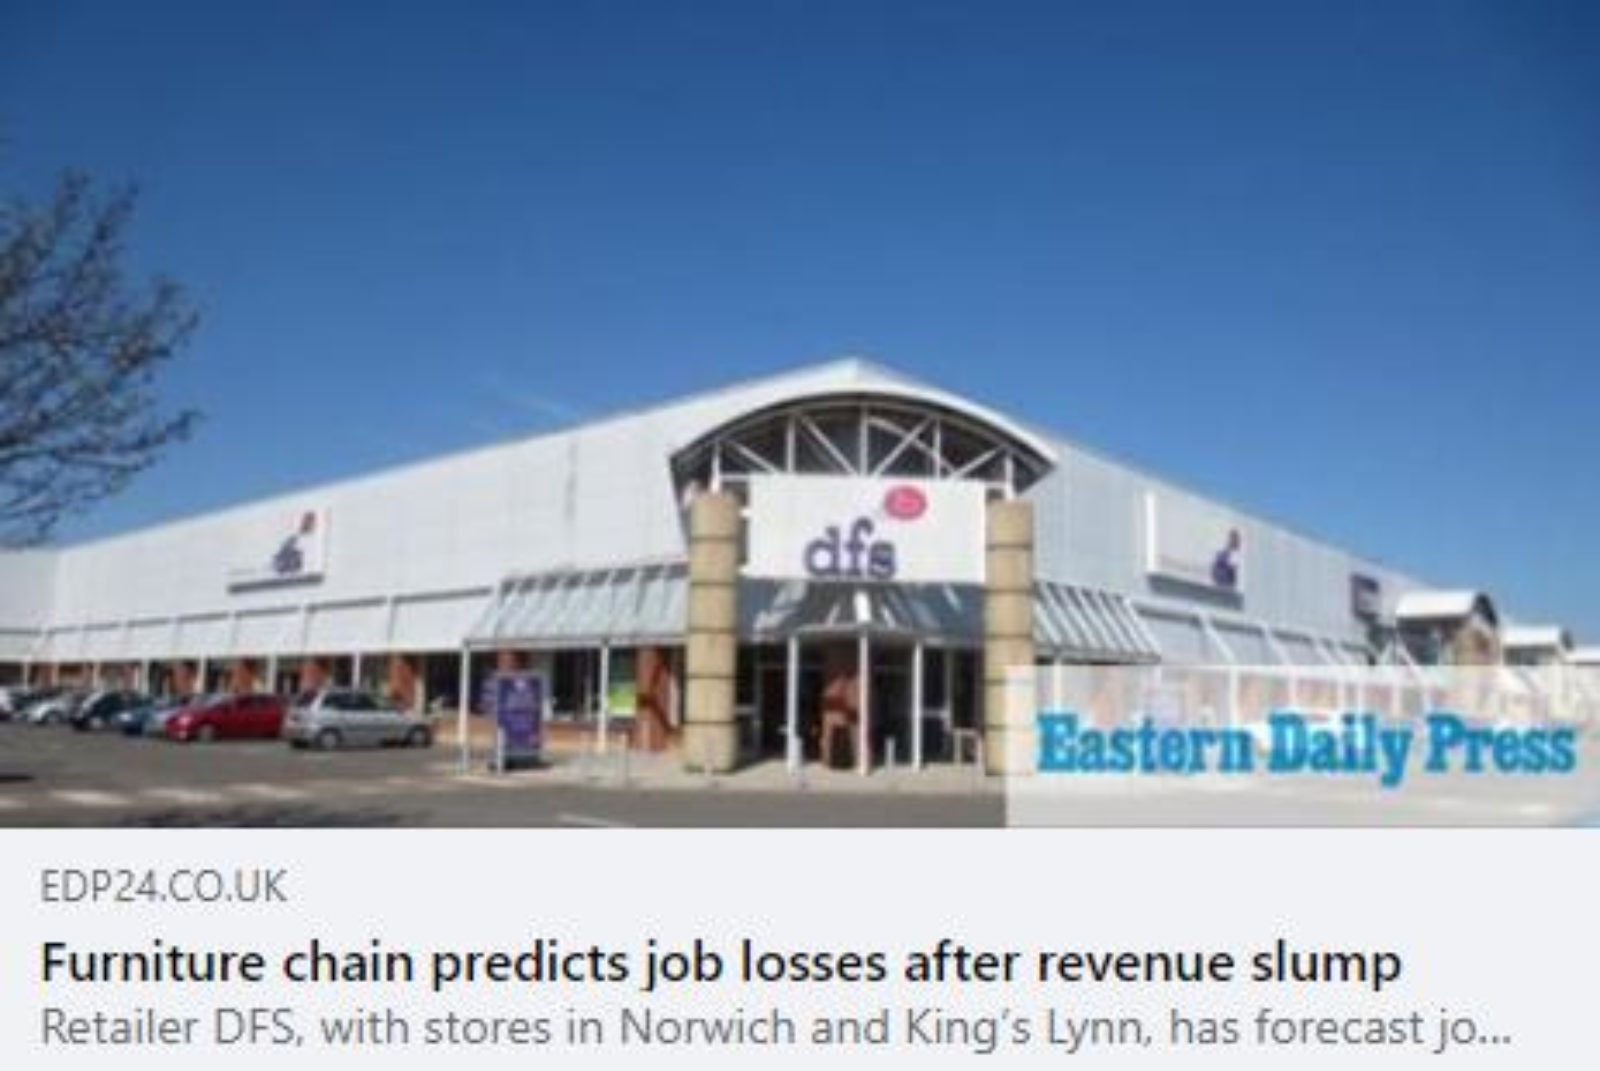 EDP: "Furniture chain predicts job losses after revenue slump"